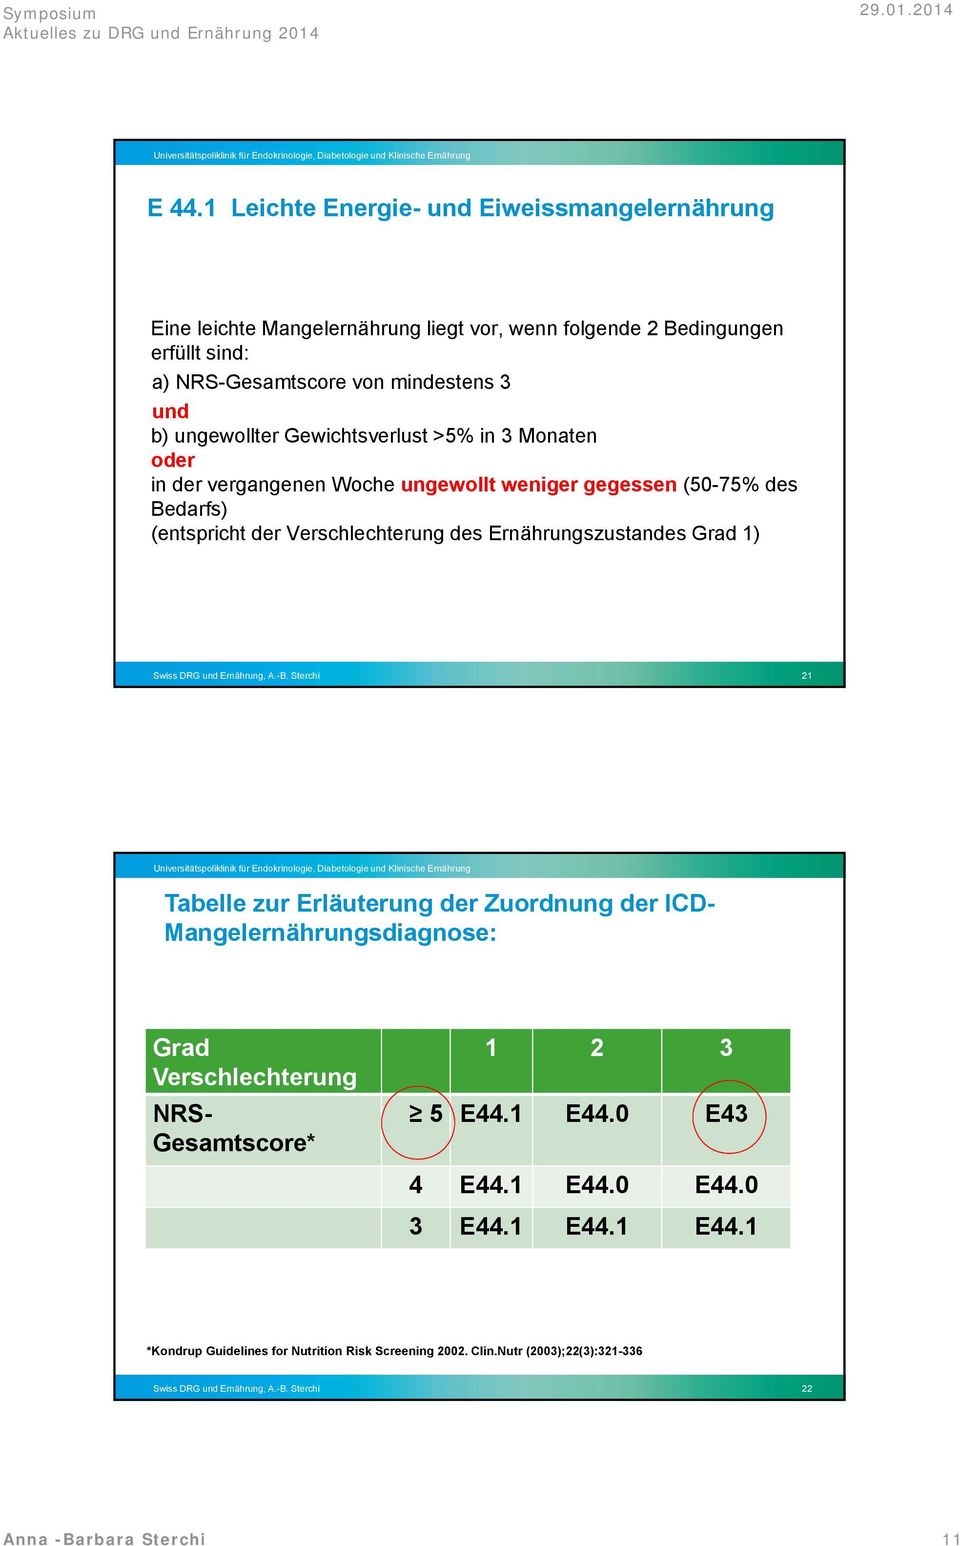 Swiss DRG und Ernährung, A.-B. Sterchi 21 Tabelle zur Erläuterung der Zuordnung der ICD- Mangelernährungsdiagnose: Grad Verschlechterung NRS- Gesamtscore* 1 2 3 5 E44.1 E44.